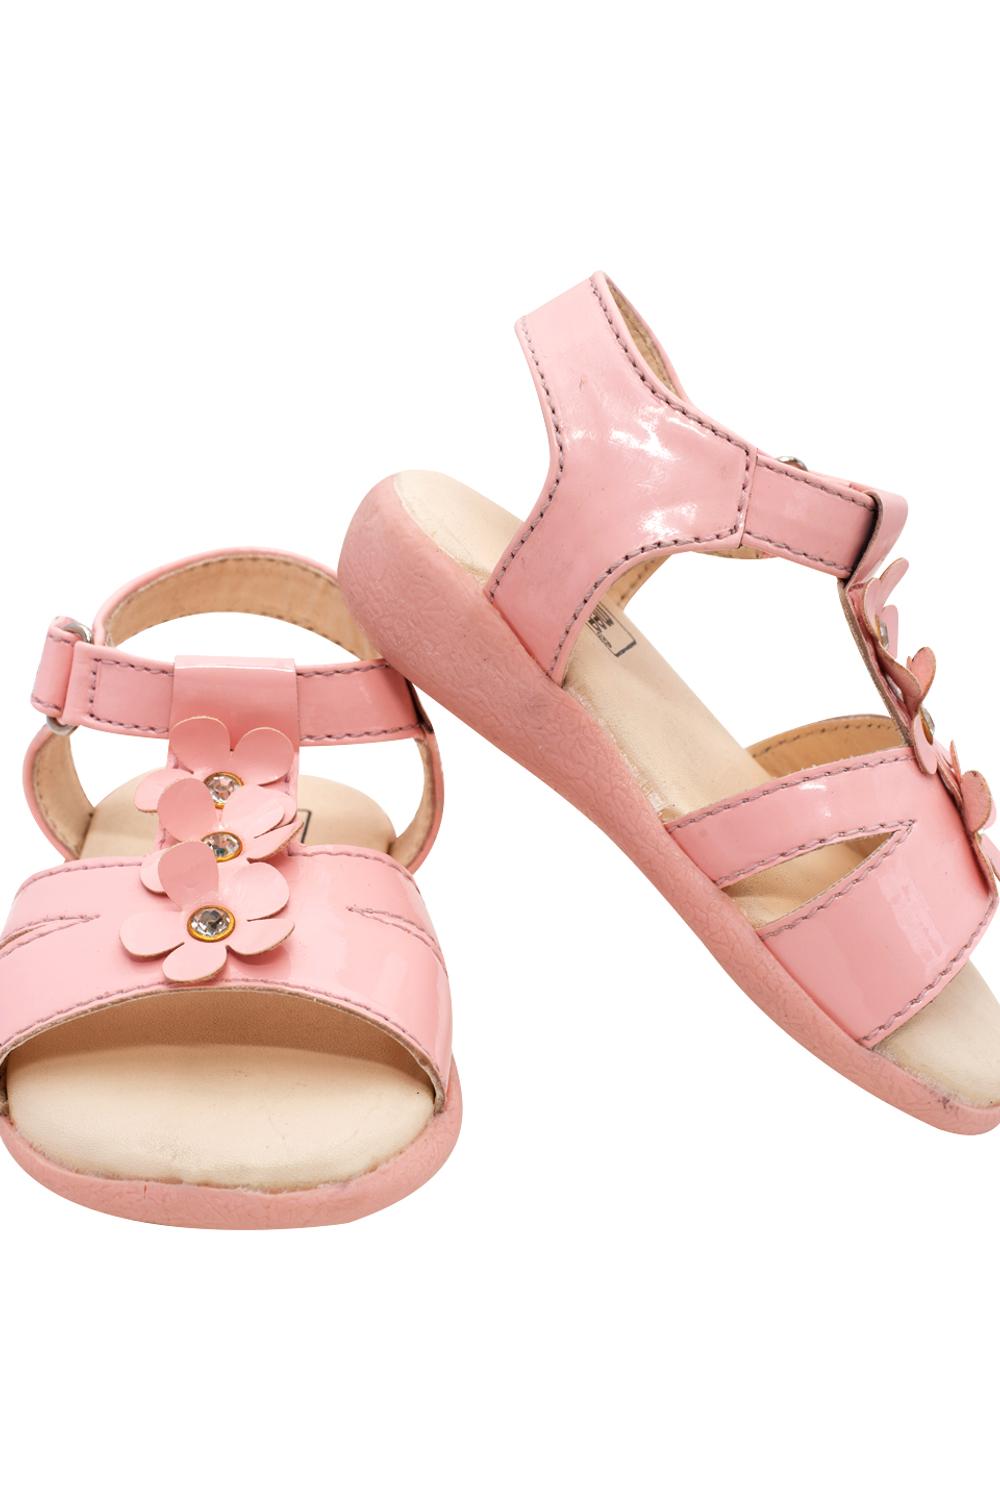 Mee Mee First Walk Baby Sandal - Pink